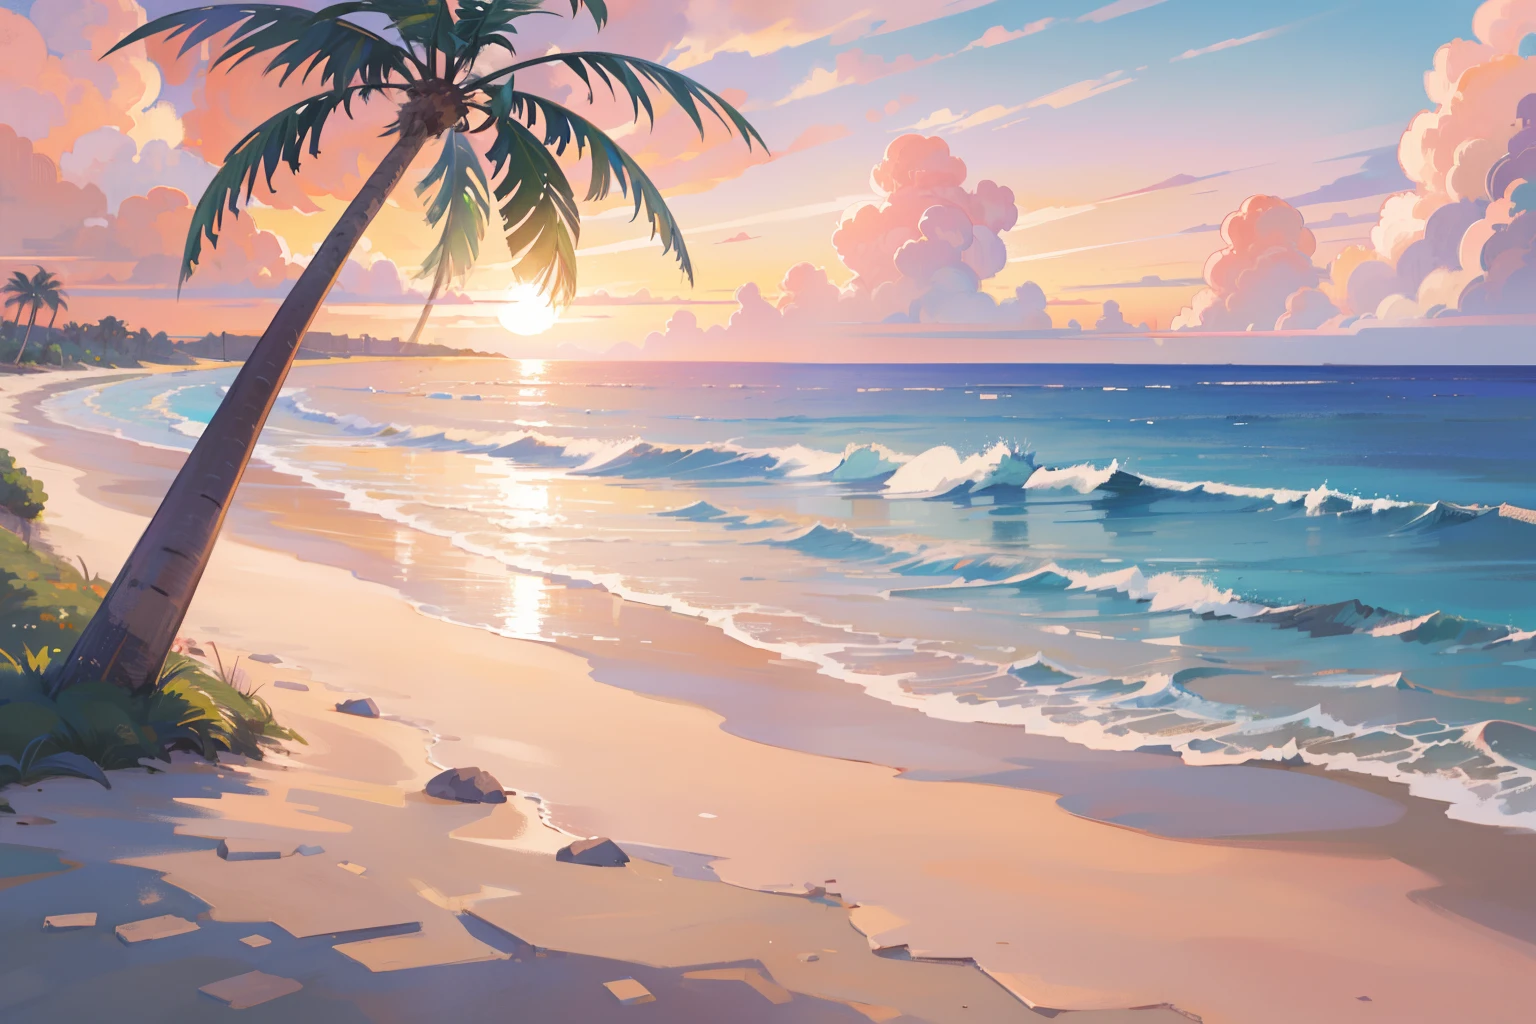 (Obra de arte), melhor qualidade, resolução ultra alta, cenário bonito, cenário detalhado, (cor pastel quente), praia, colorful praia, areia rosa, Palmeira, mar, pôr do sol